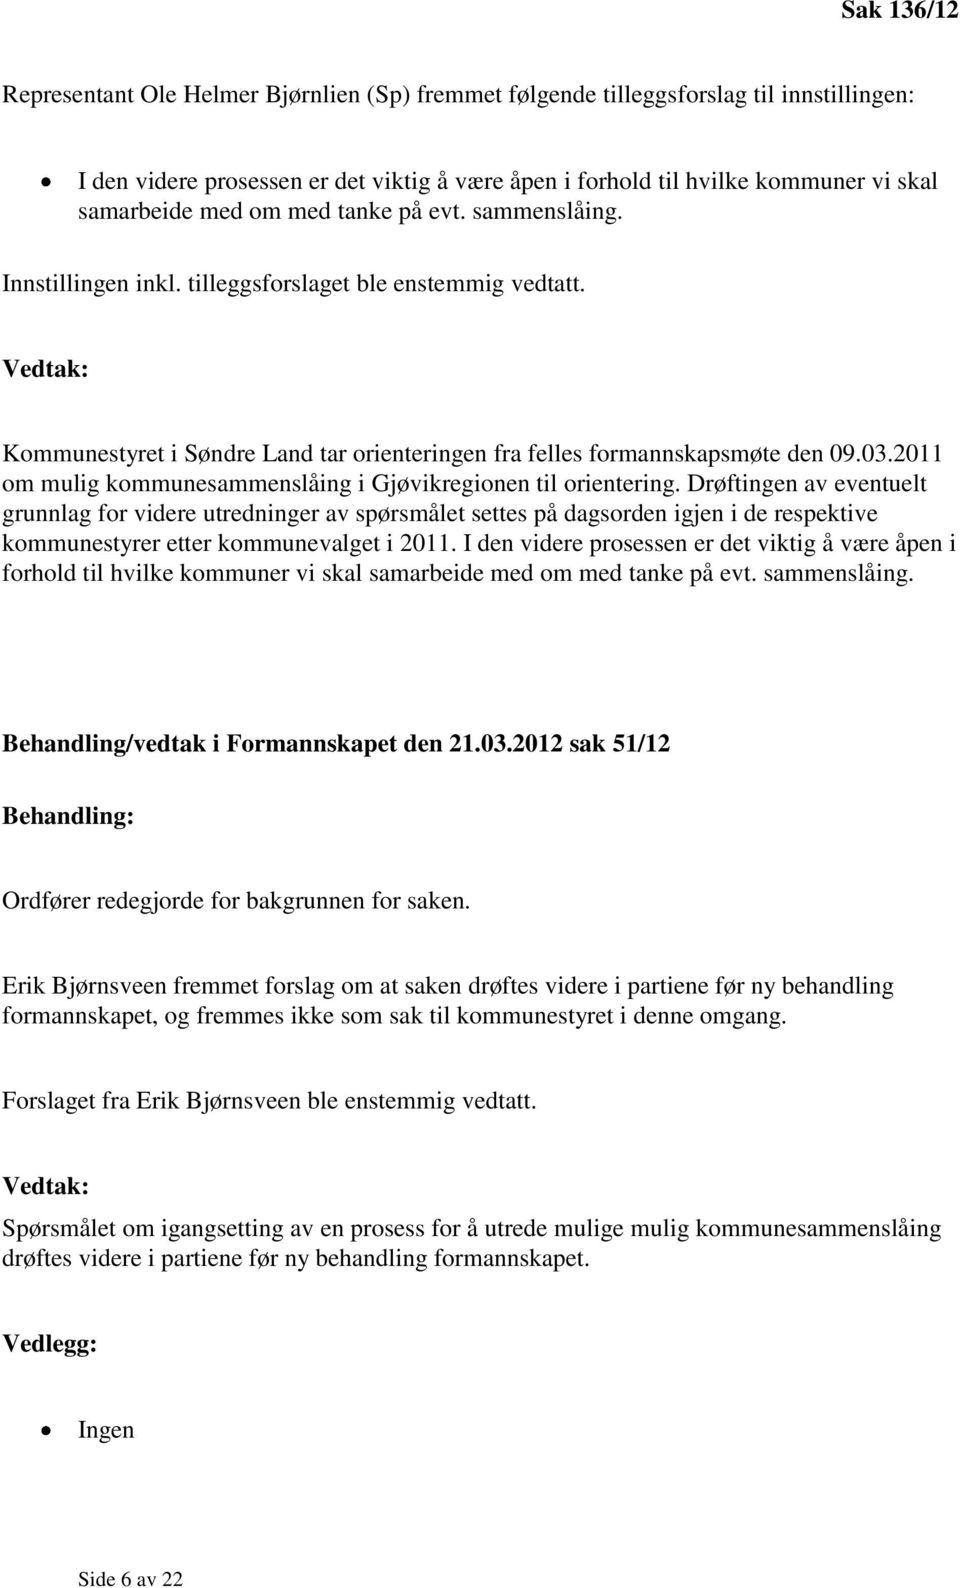 2011 om mulig kommunesammenslåing i Gjøvikregionen til orientering.